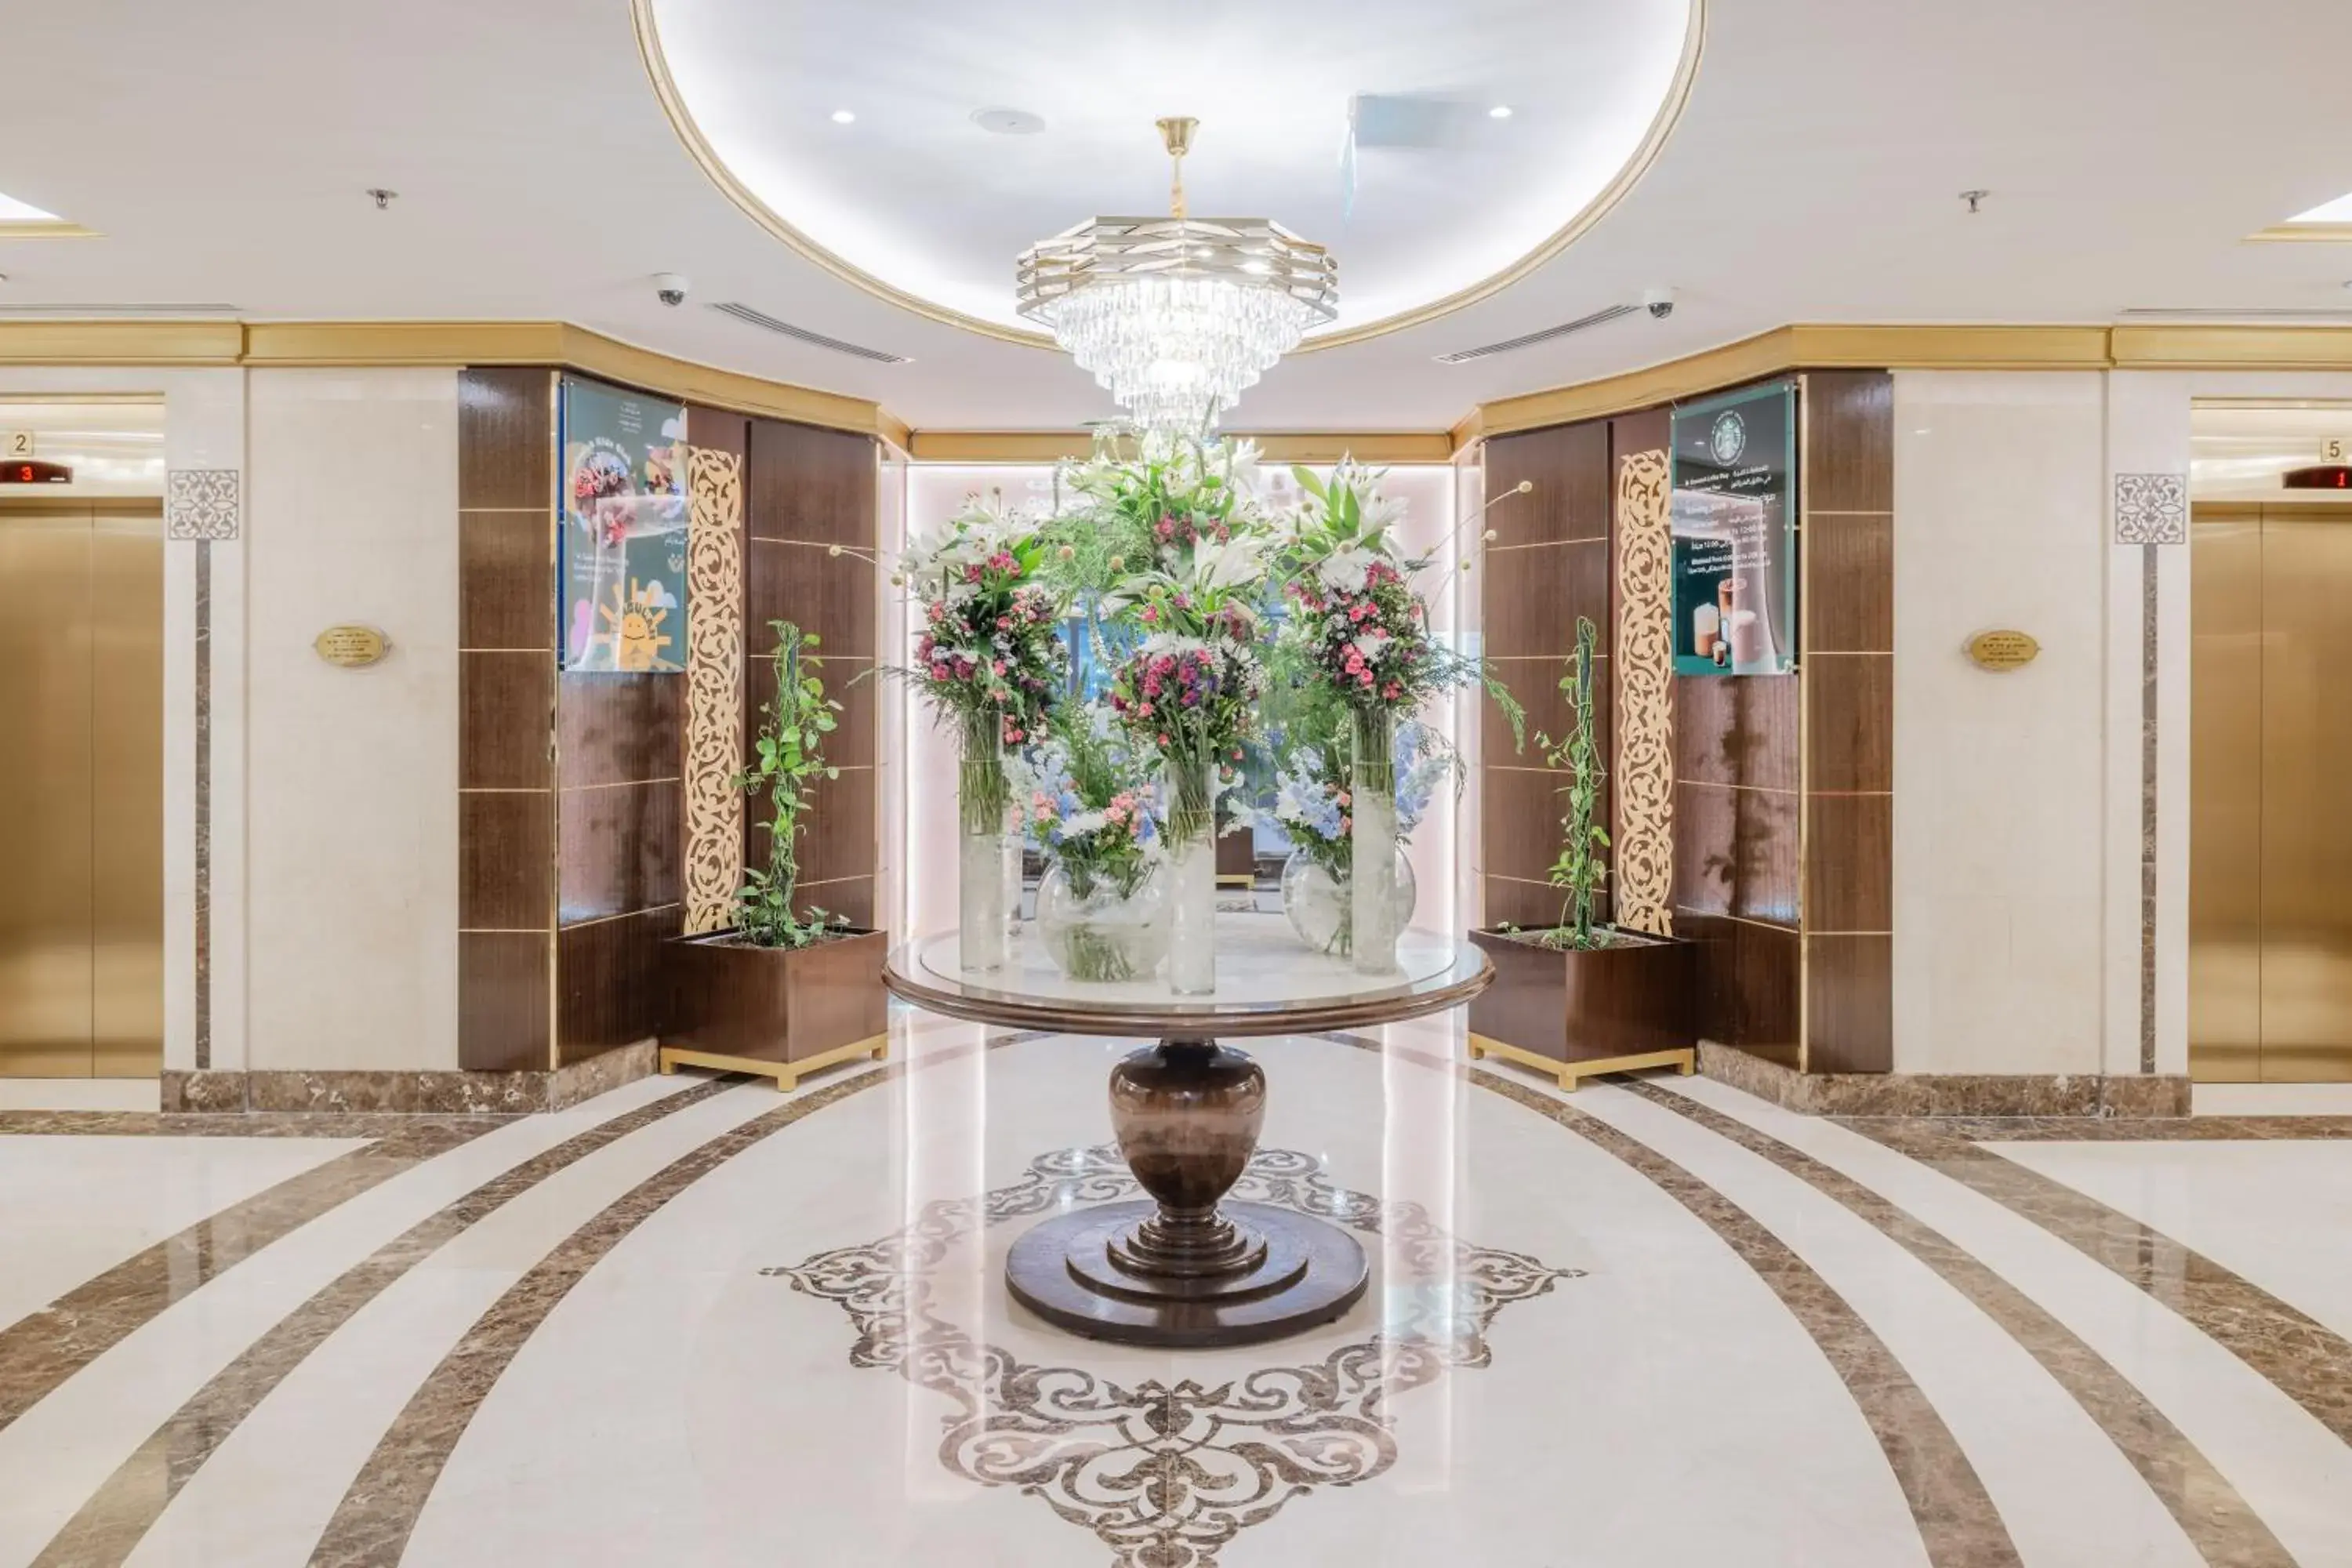 Lobby or reception in Taiba Madinah Hotel